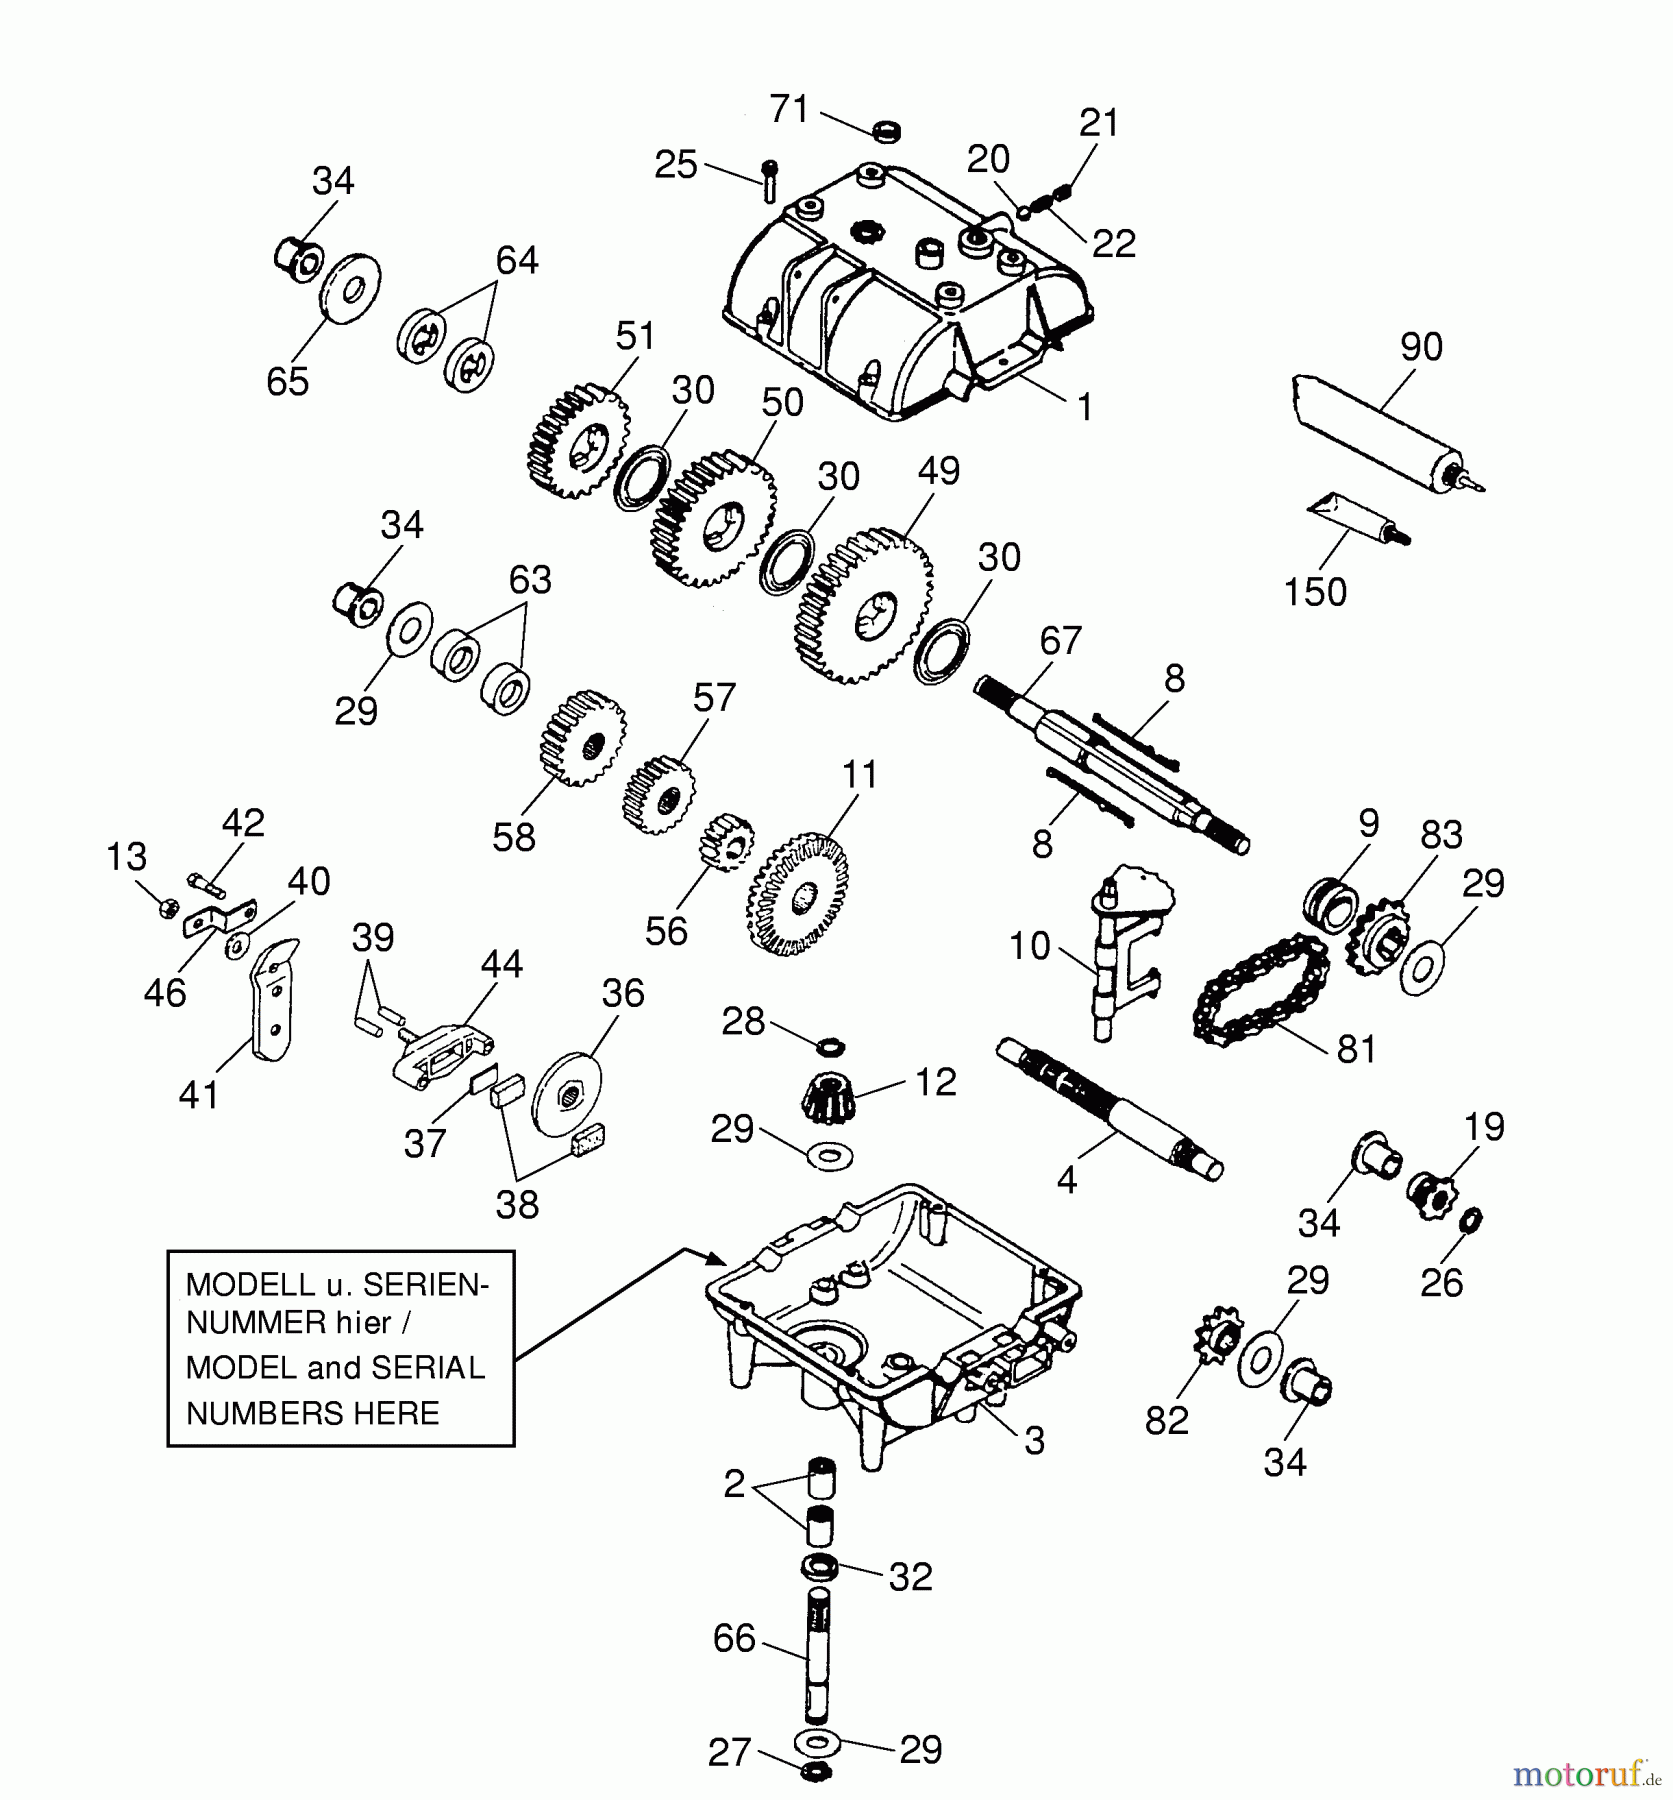  Wolf-Garten Scooter OHV 3 6995000 Series A  (2001) Gearbox